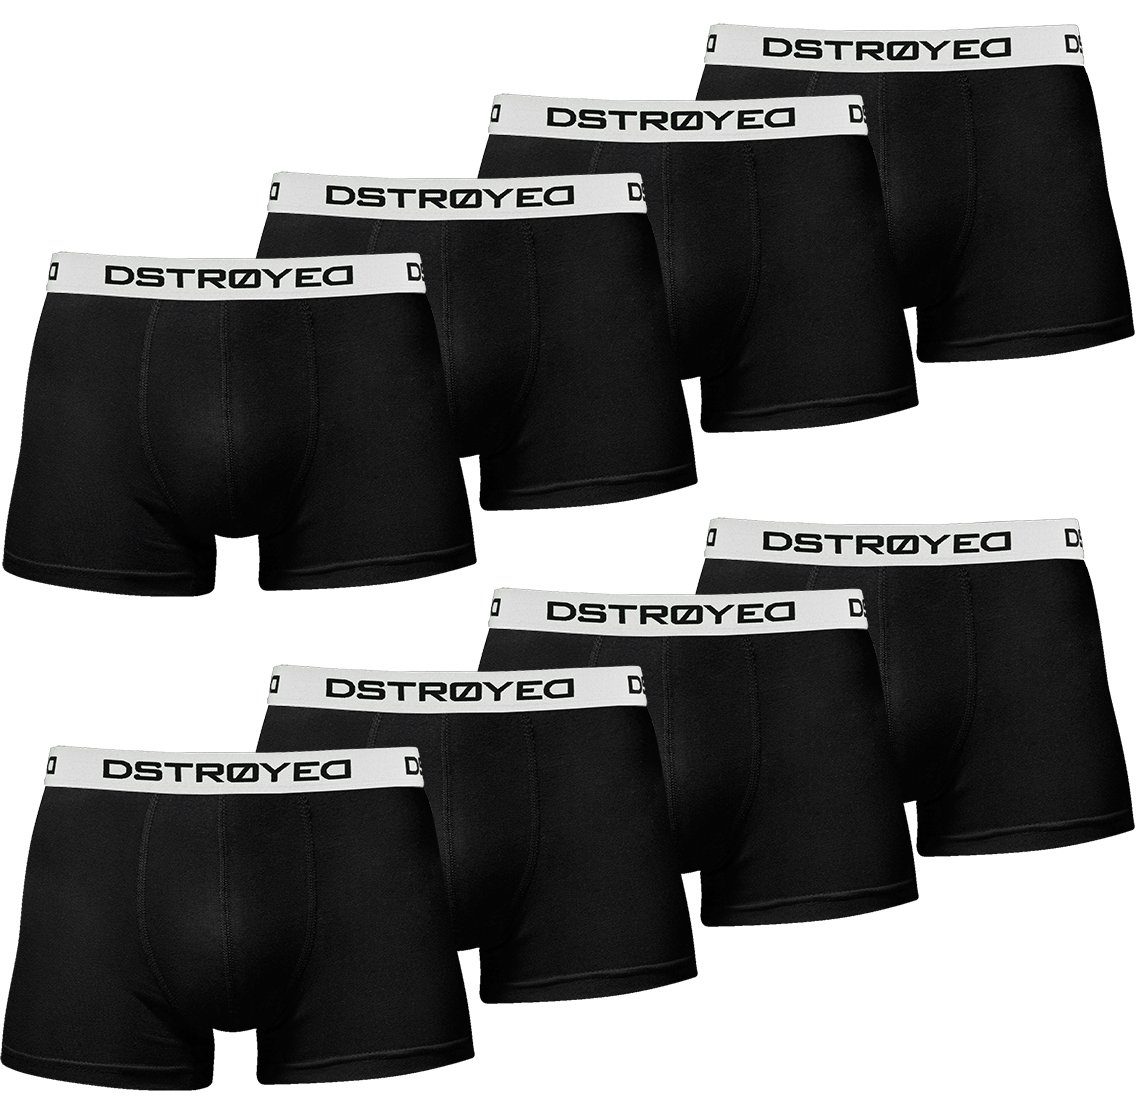 DSTROYED Boxershorts Herren Männer Unterhosen Baumwolle Premium Qualität perfekte Passform (Vorteilspack, 8er, 8er Pack) 315b-schwarz/weiß